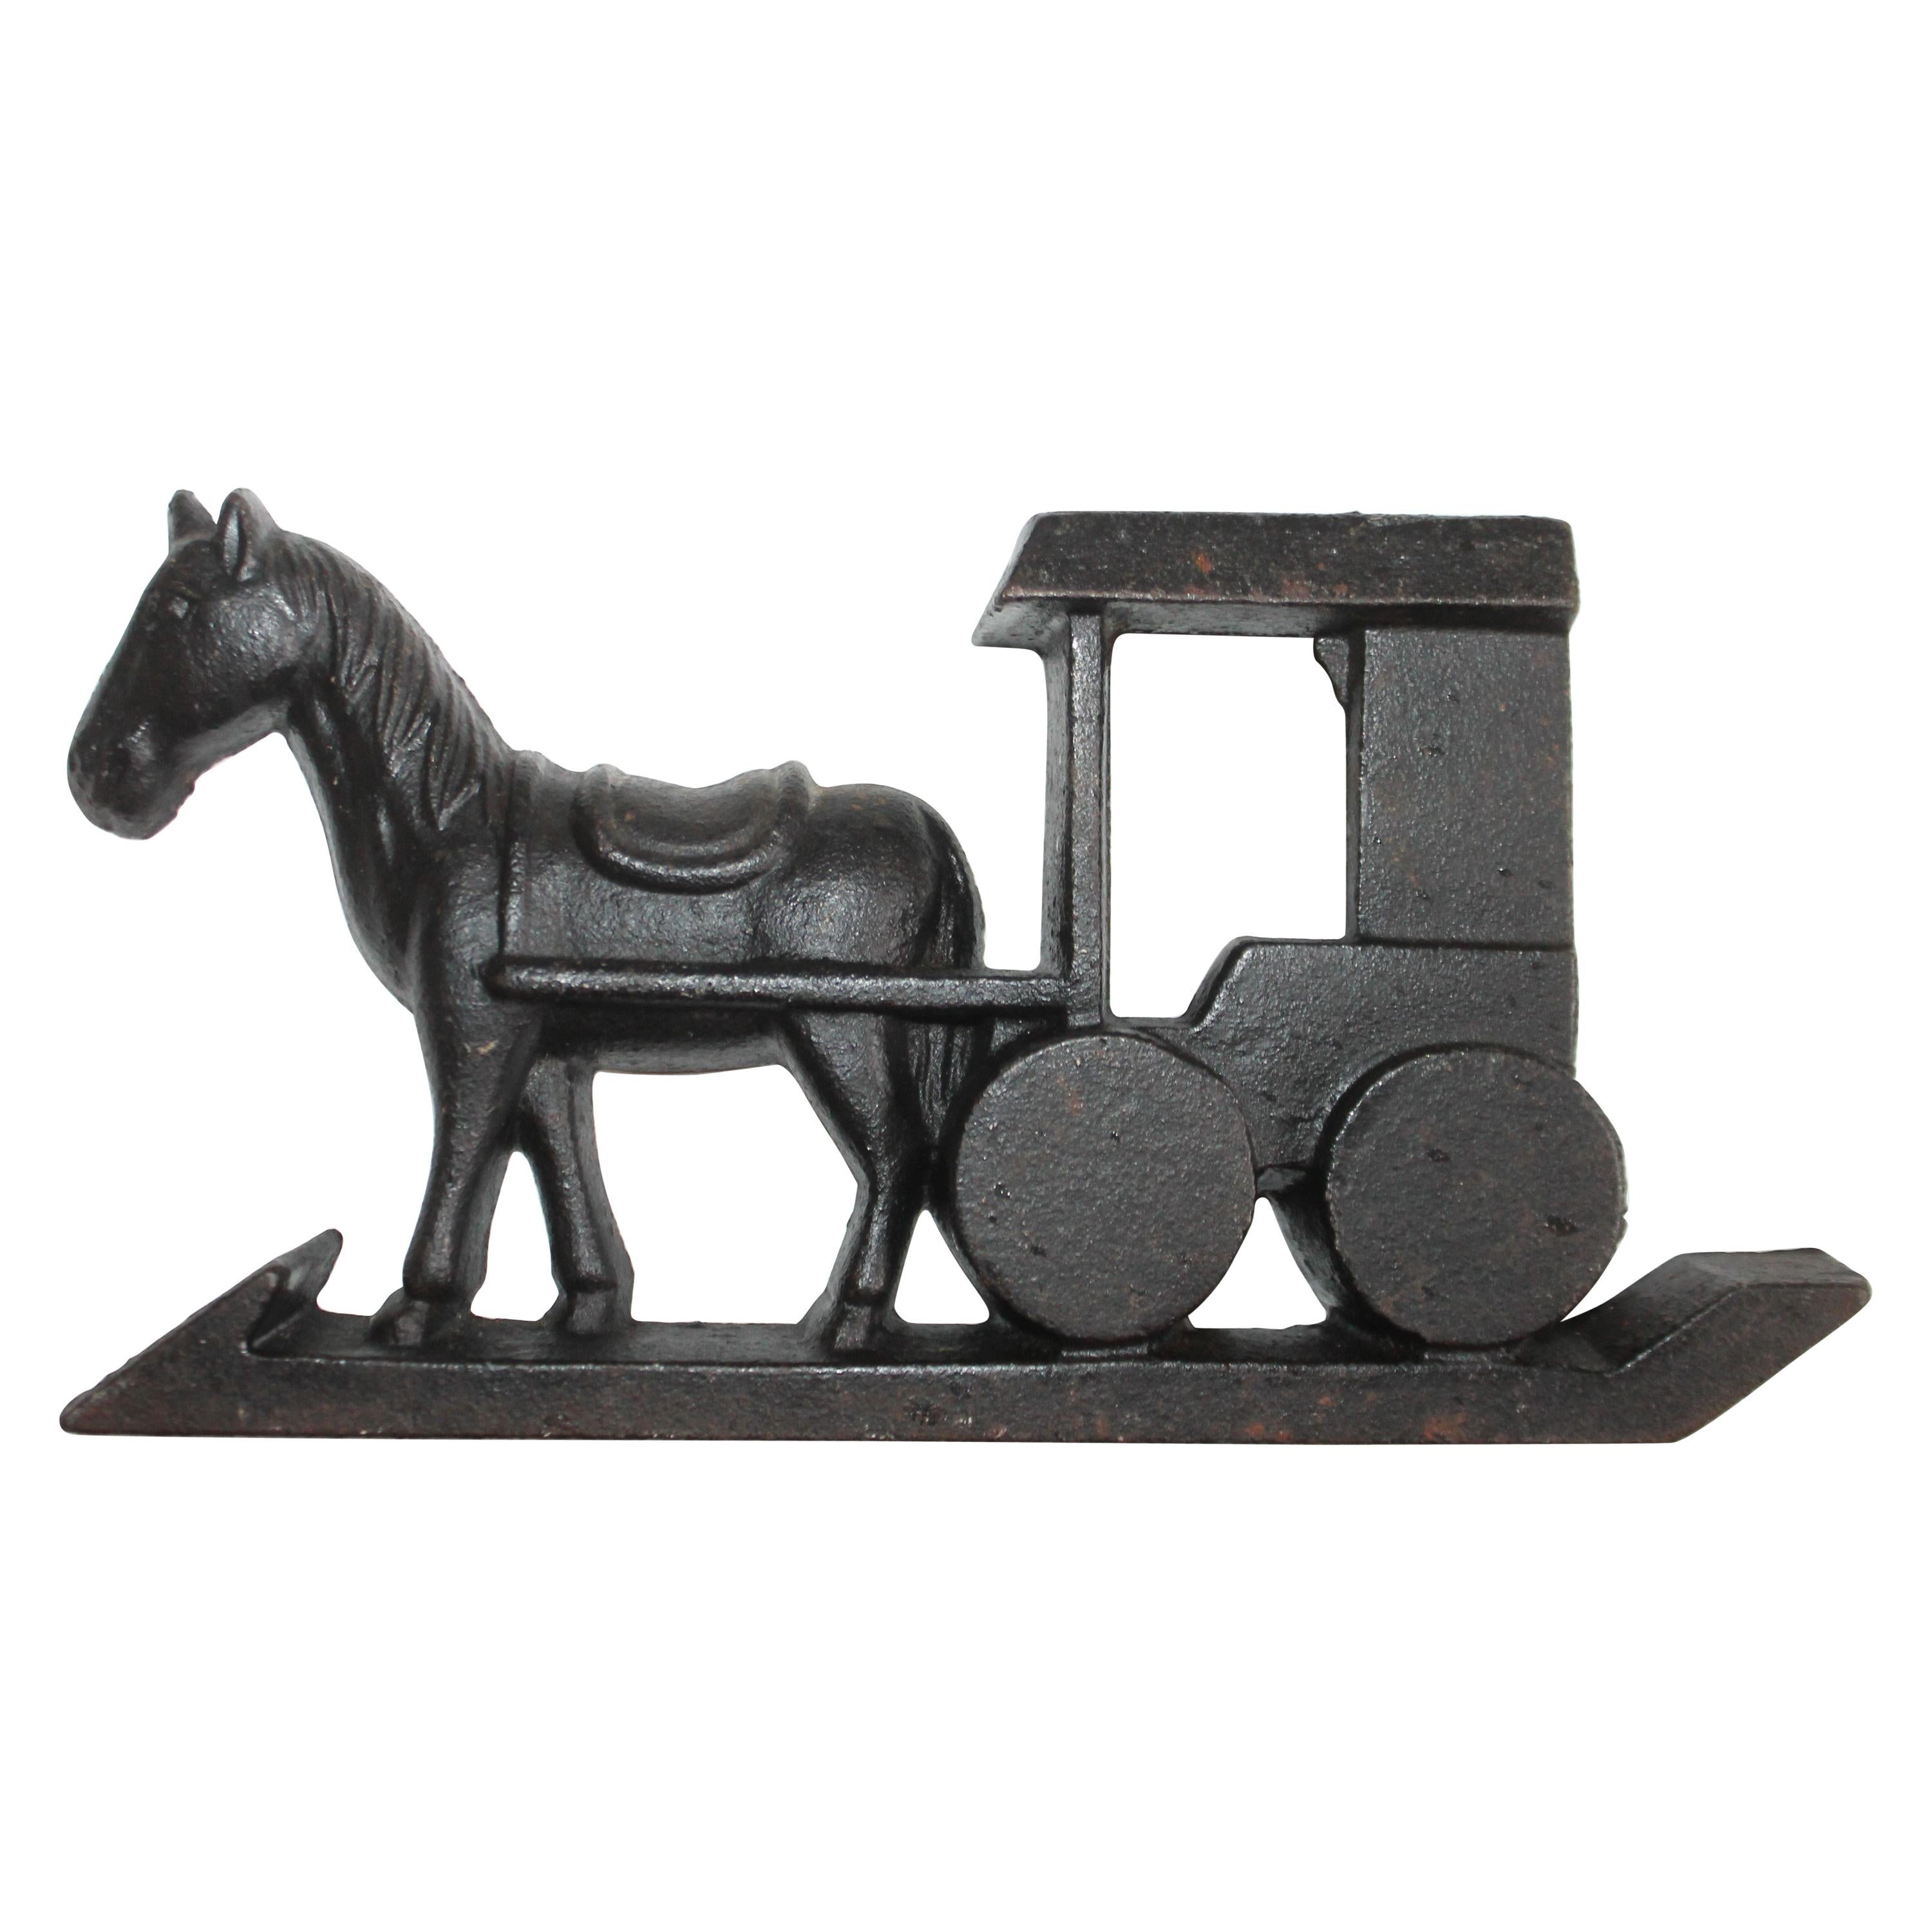 Butoir de porte en fer folklorique représentant un cheval et un buggy